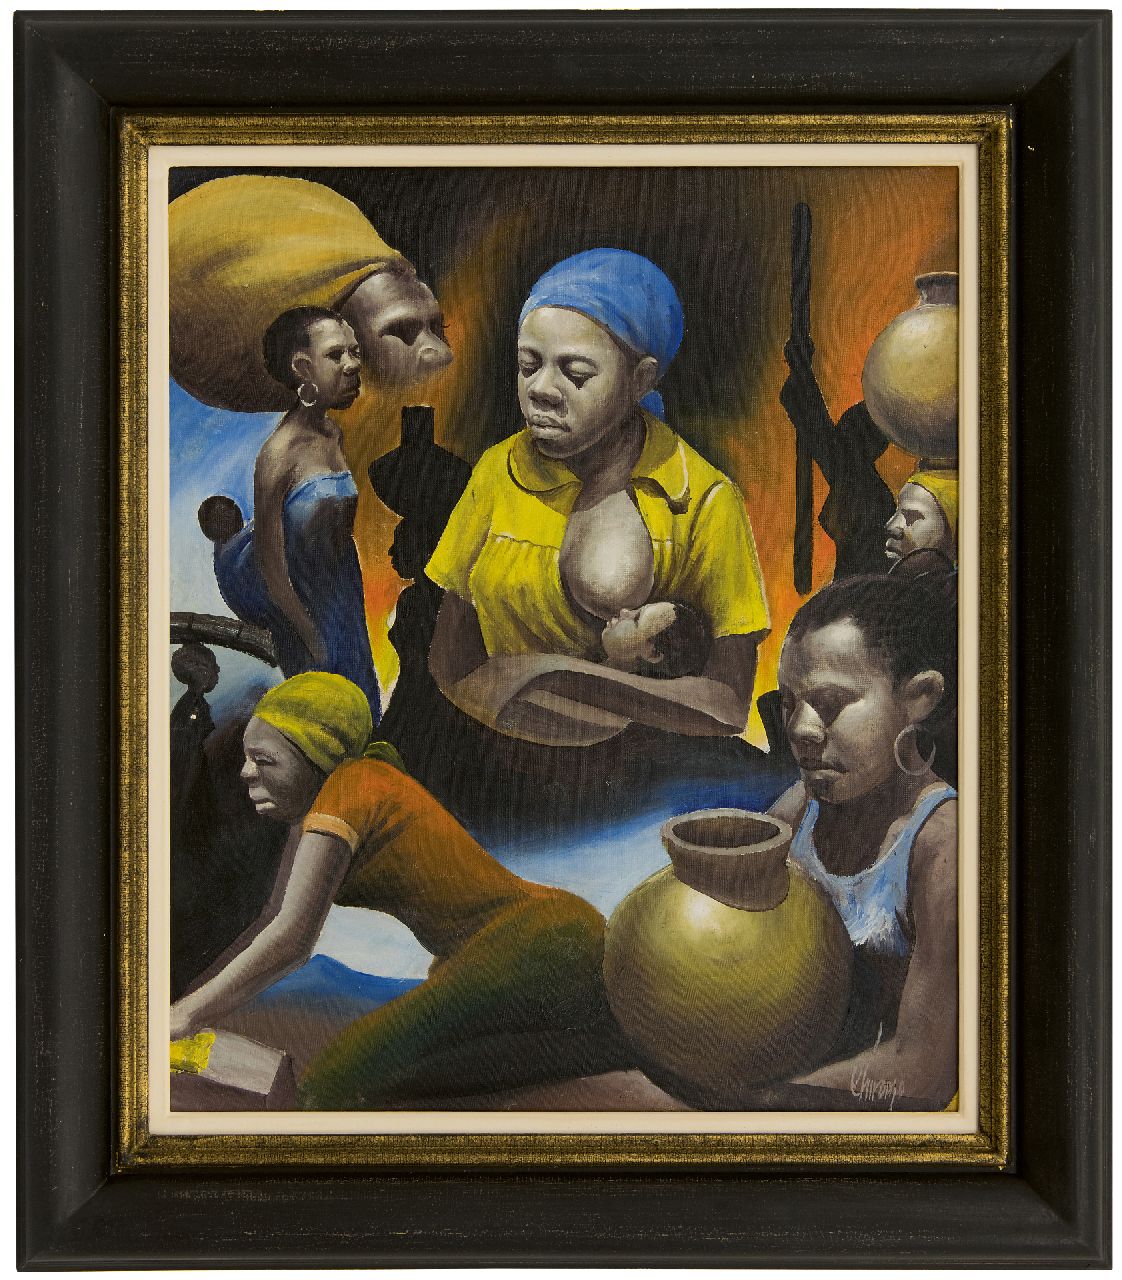 Chiromo K.  | Kay Chiromo | Schilderijen te koop aangeboden | Afrikaanse vrouwen; verso: Vrouwenportret, olieverf op doek 54,6 x 45,5 cm, gesigneerd rechtsonder en verso en verso gedateerd '79